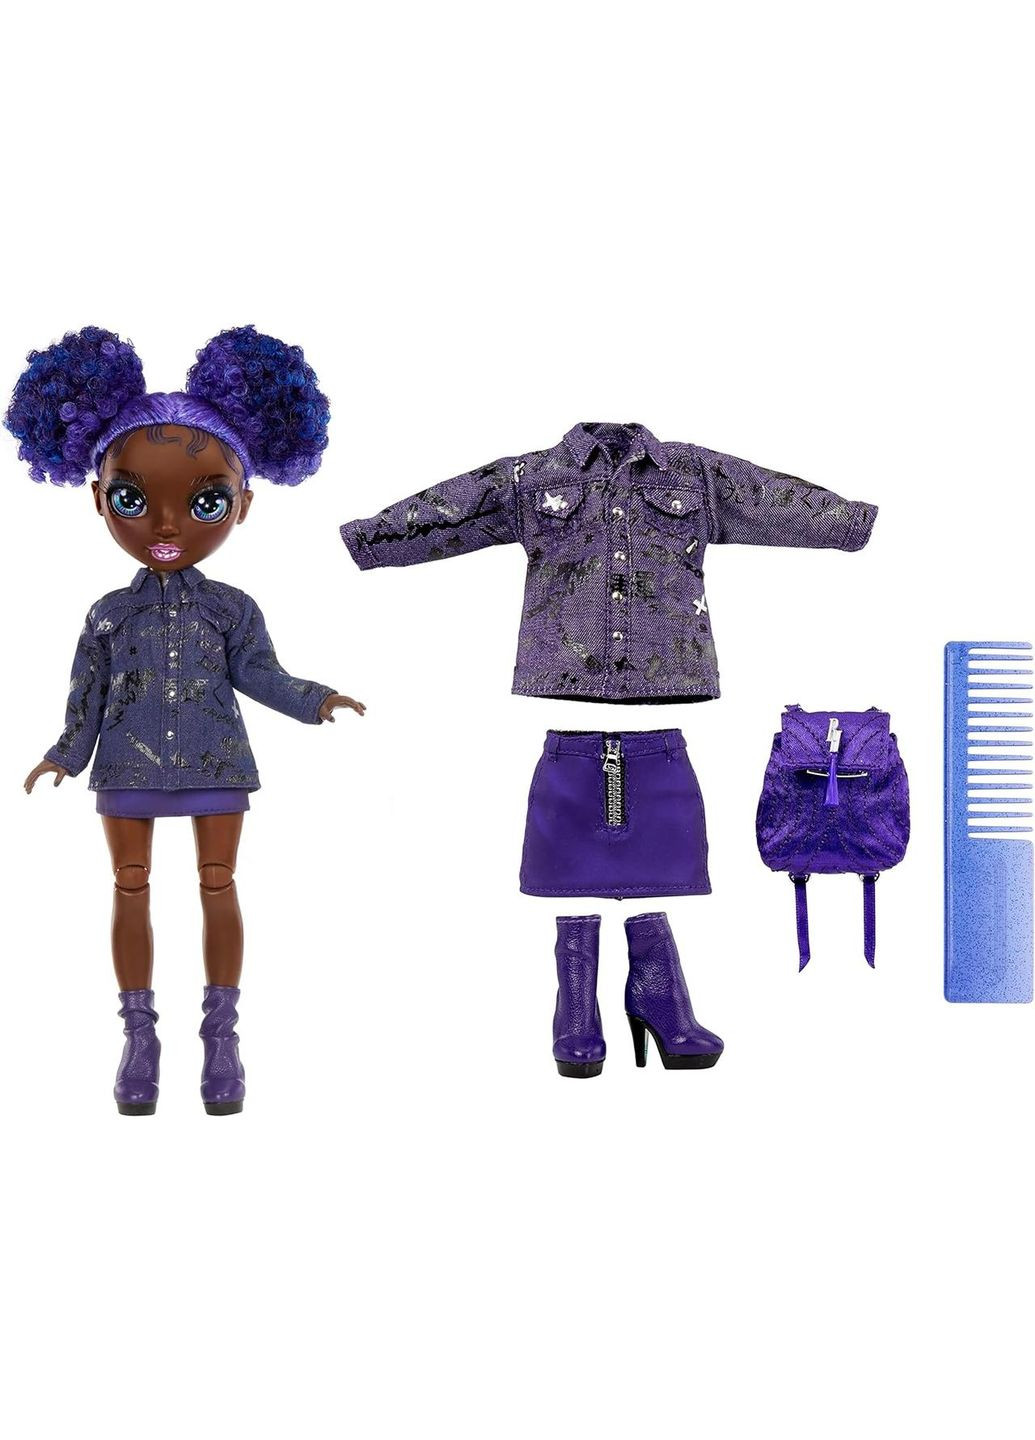 Кукла Rainbow High Jr High Series 2 Krystal Bailey фиолетовая Кристалл MGA Entertainment (282964612)